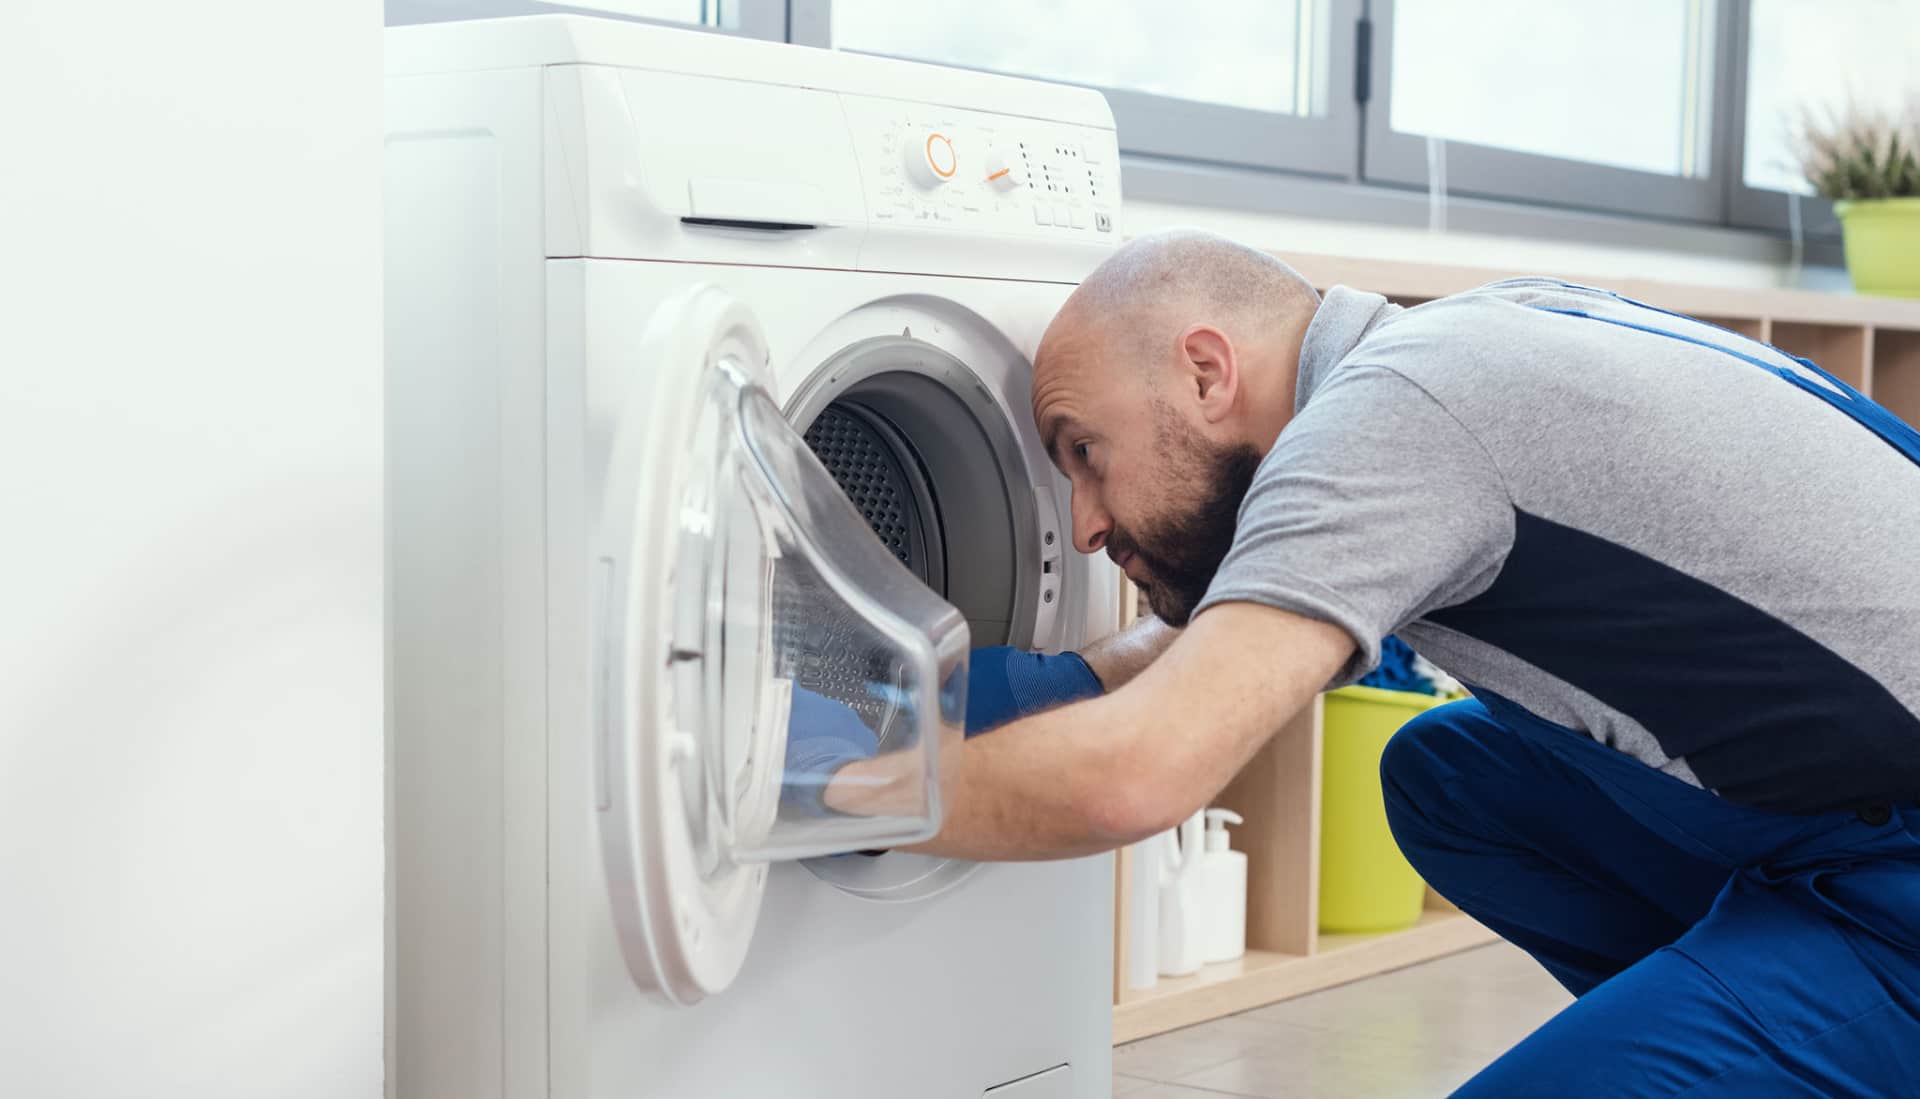 Laundry machine and equipment repair and maintenance